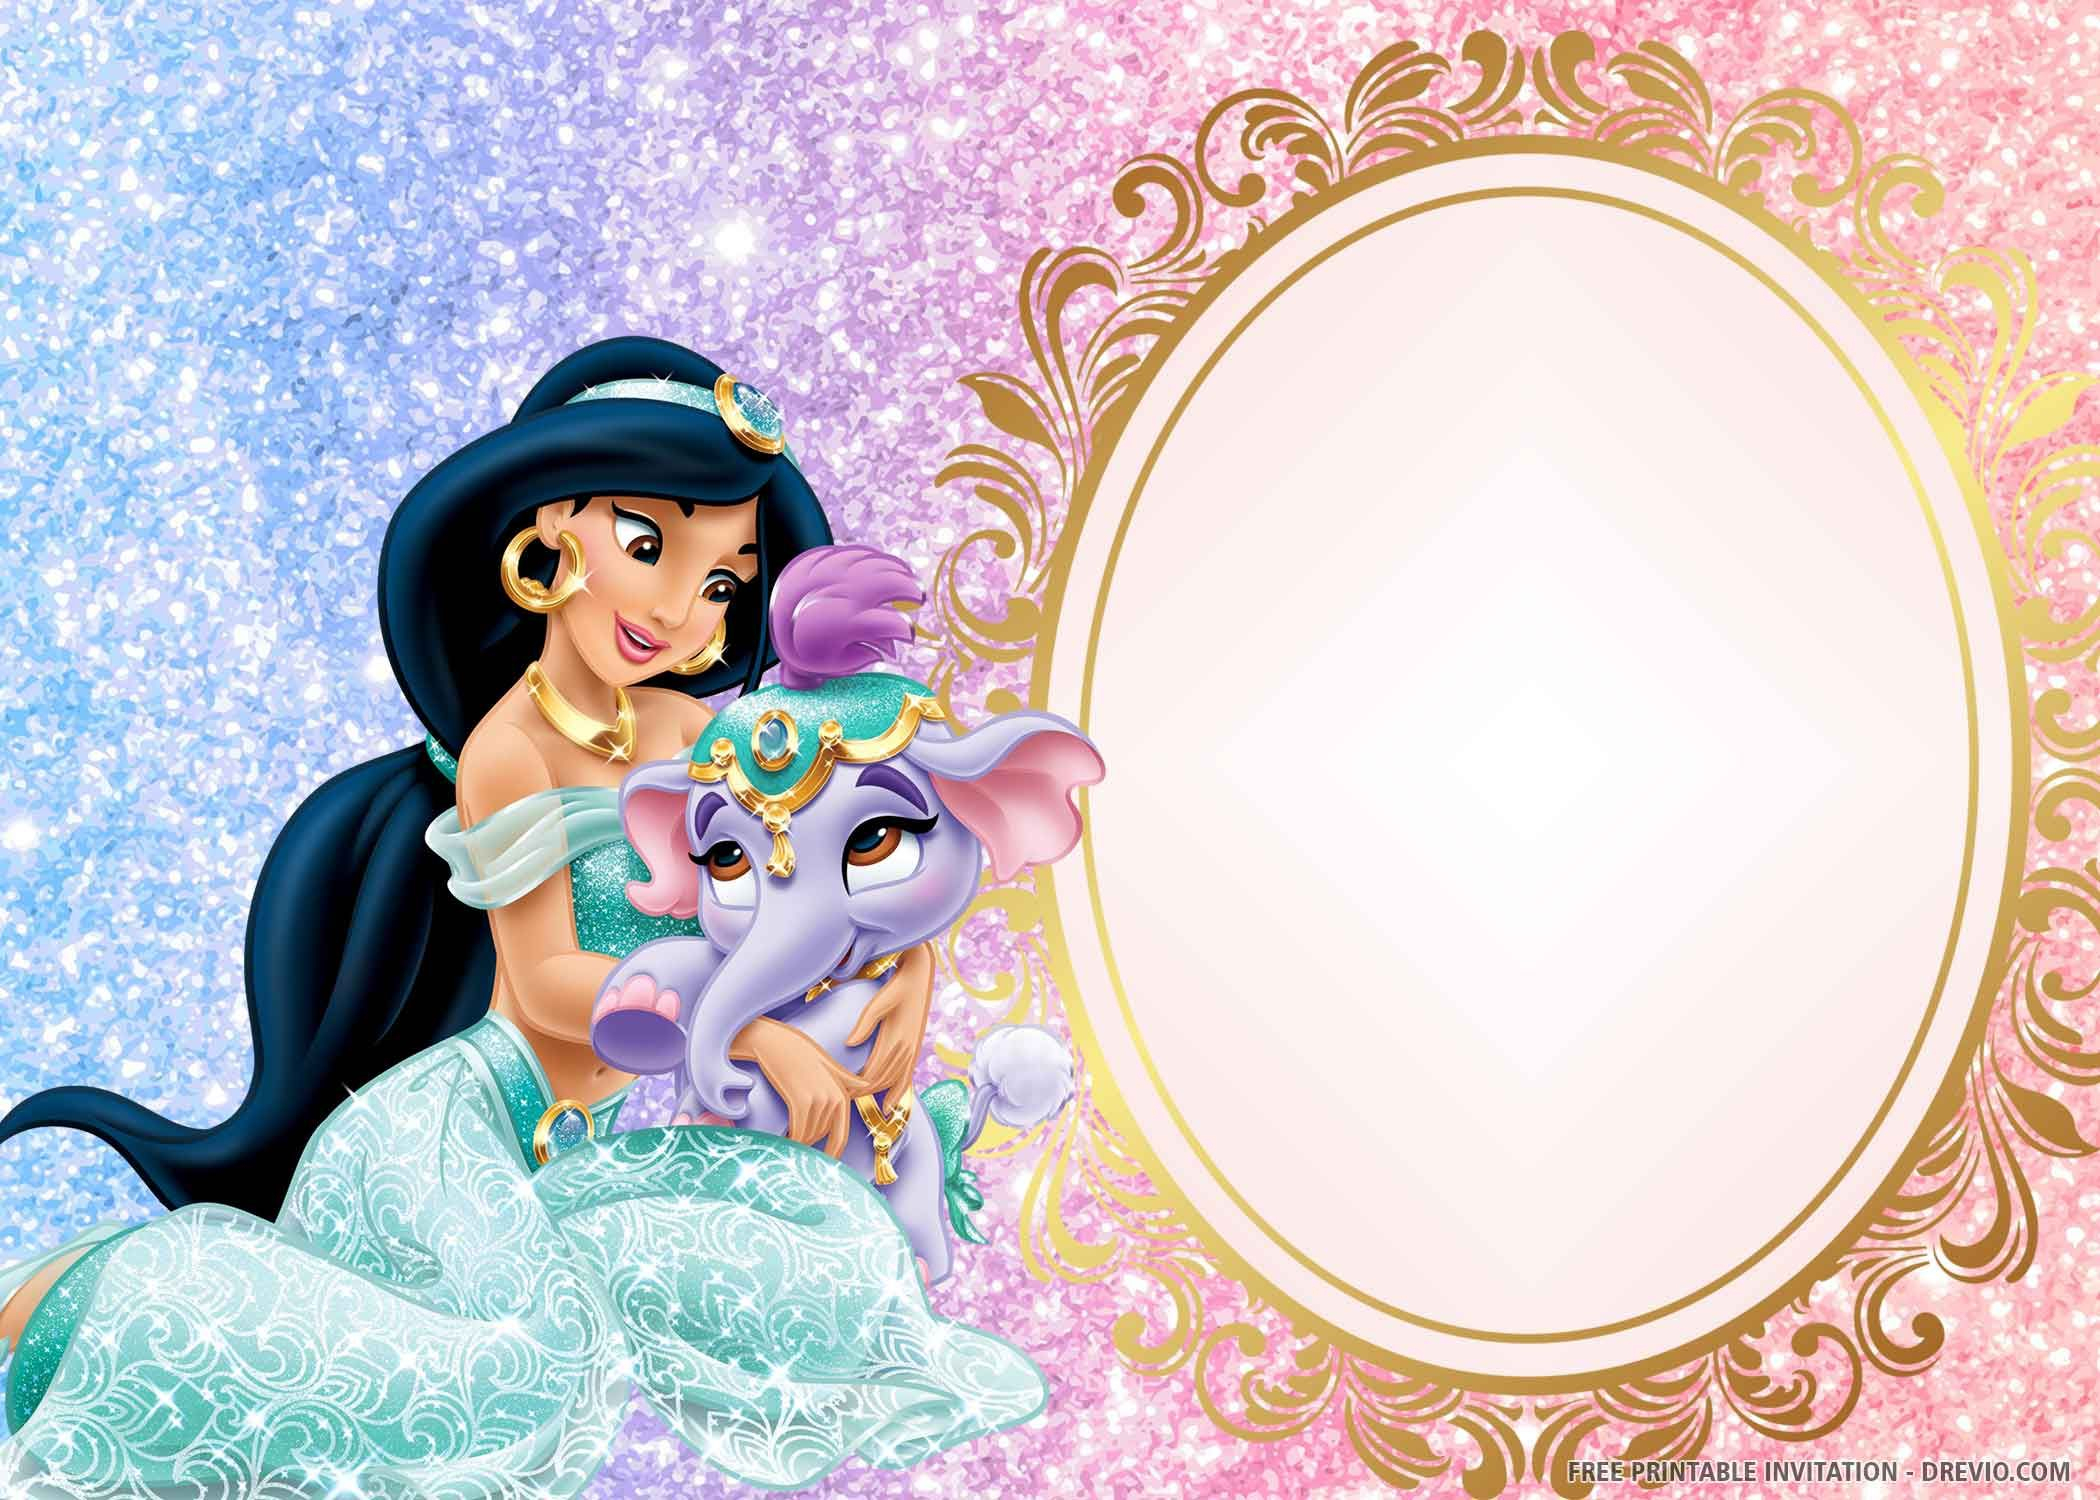 Free Printable) – Princess Jasmine Birthday Invitation Template - Free Printable Princess Jasmine Invitations